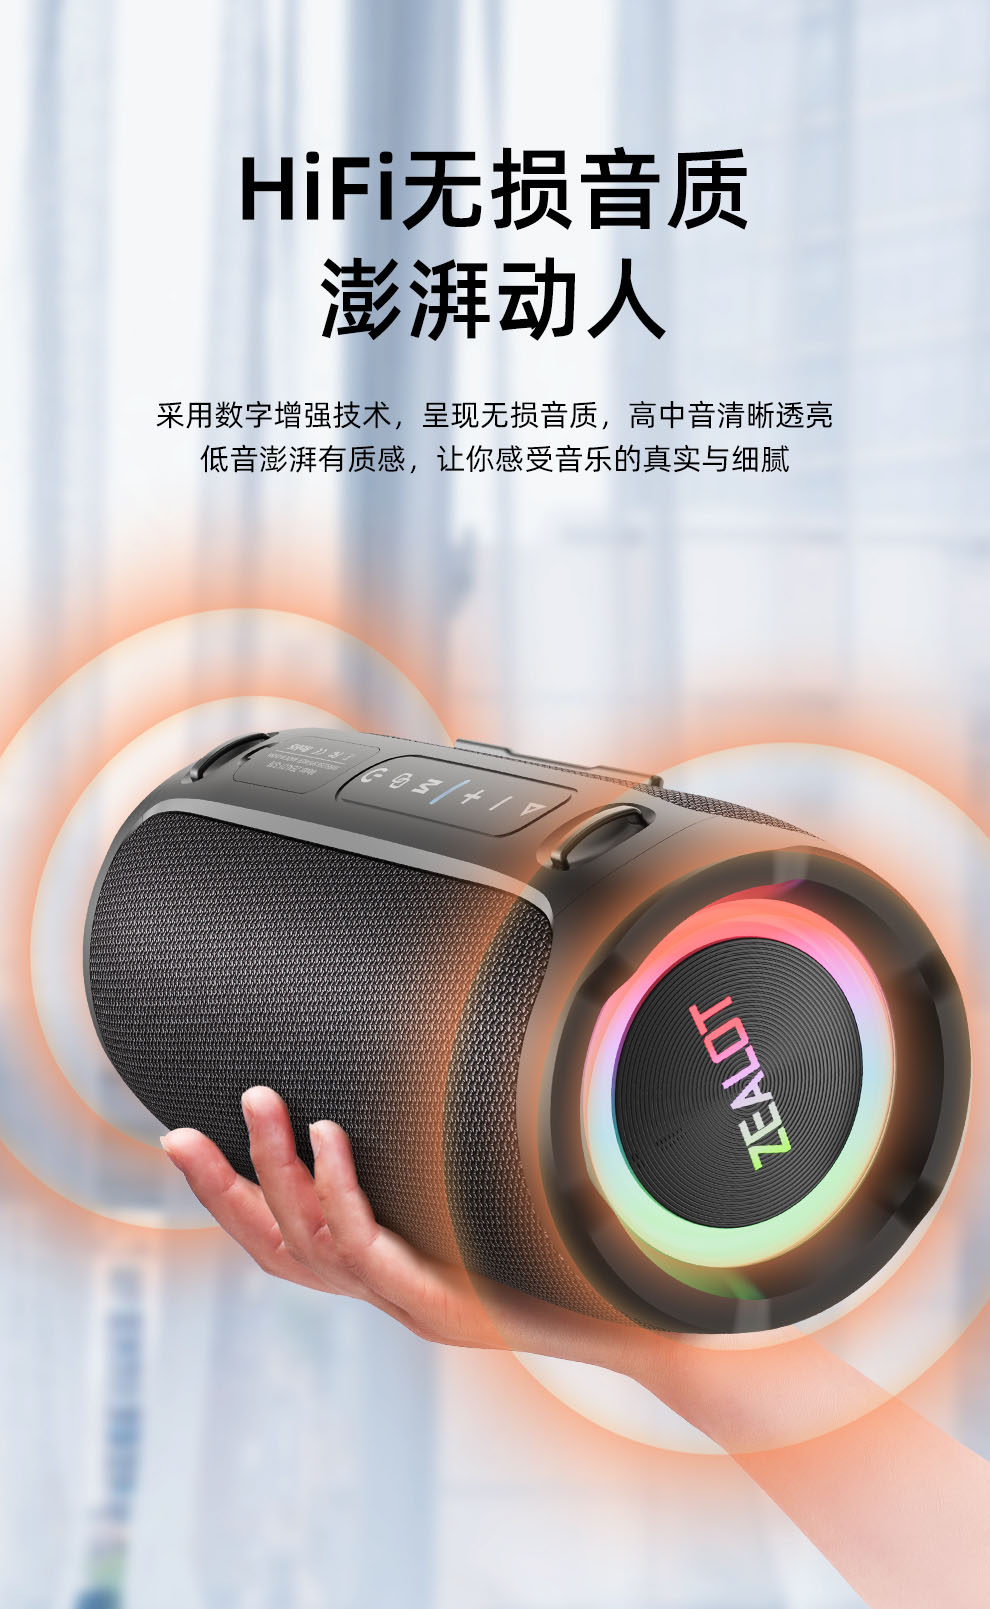 狂热者S76 蓝牙音箱-深圳市狂热者数码科技有限公司